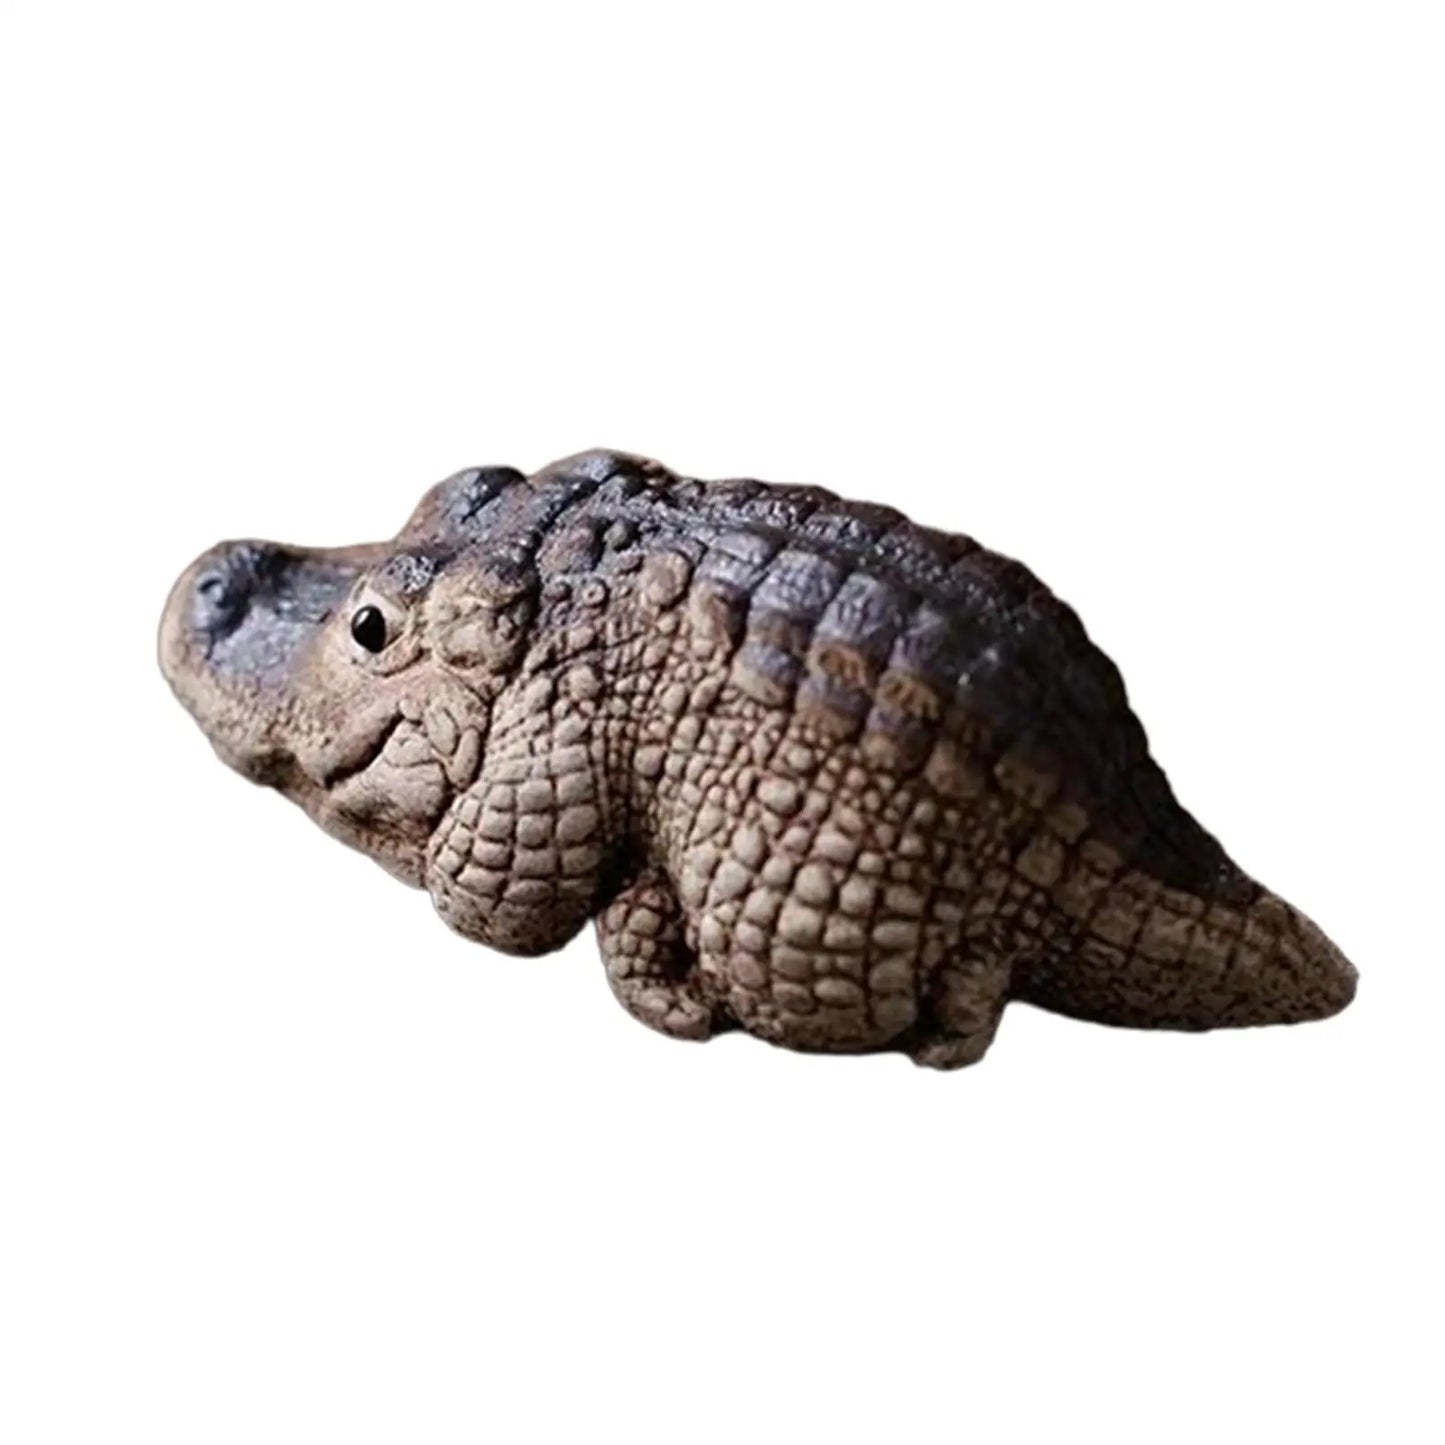 1x Clay Alligator Crocodile Mini Tea Pet Figurine Decoration Miniature Figurine